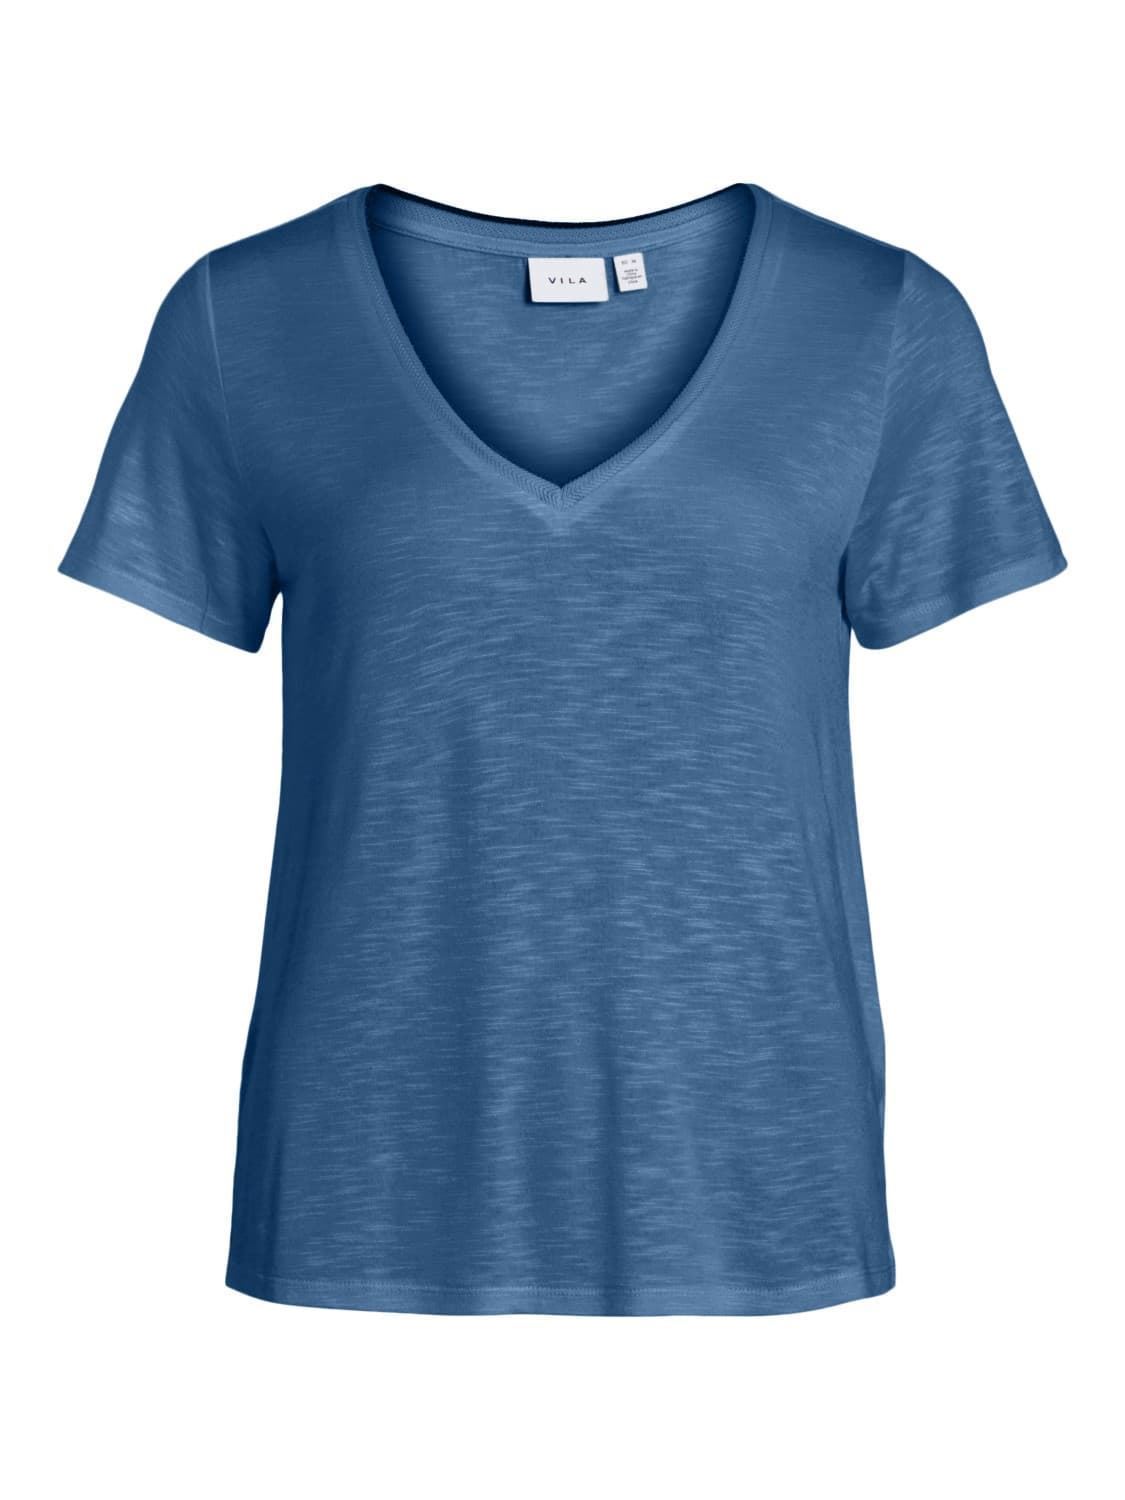 Camiseta azul vinoel - Imagen 5